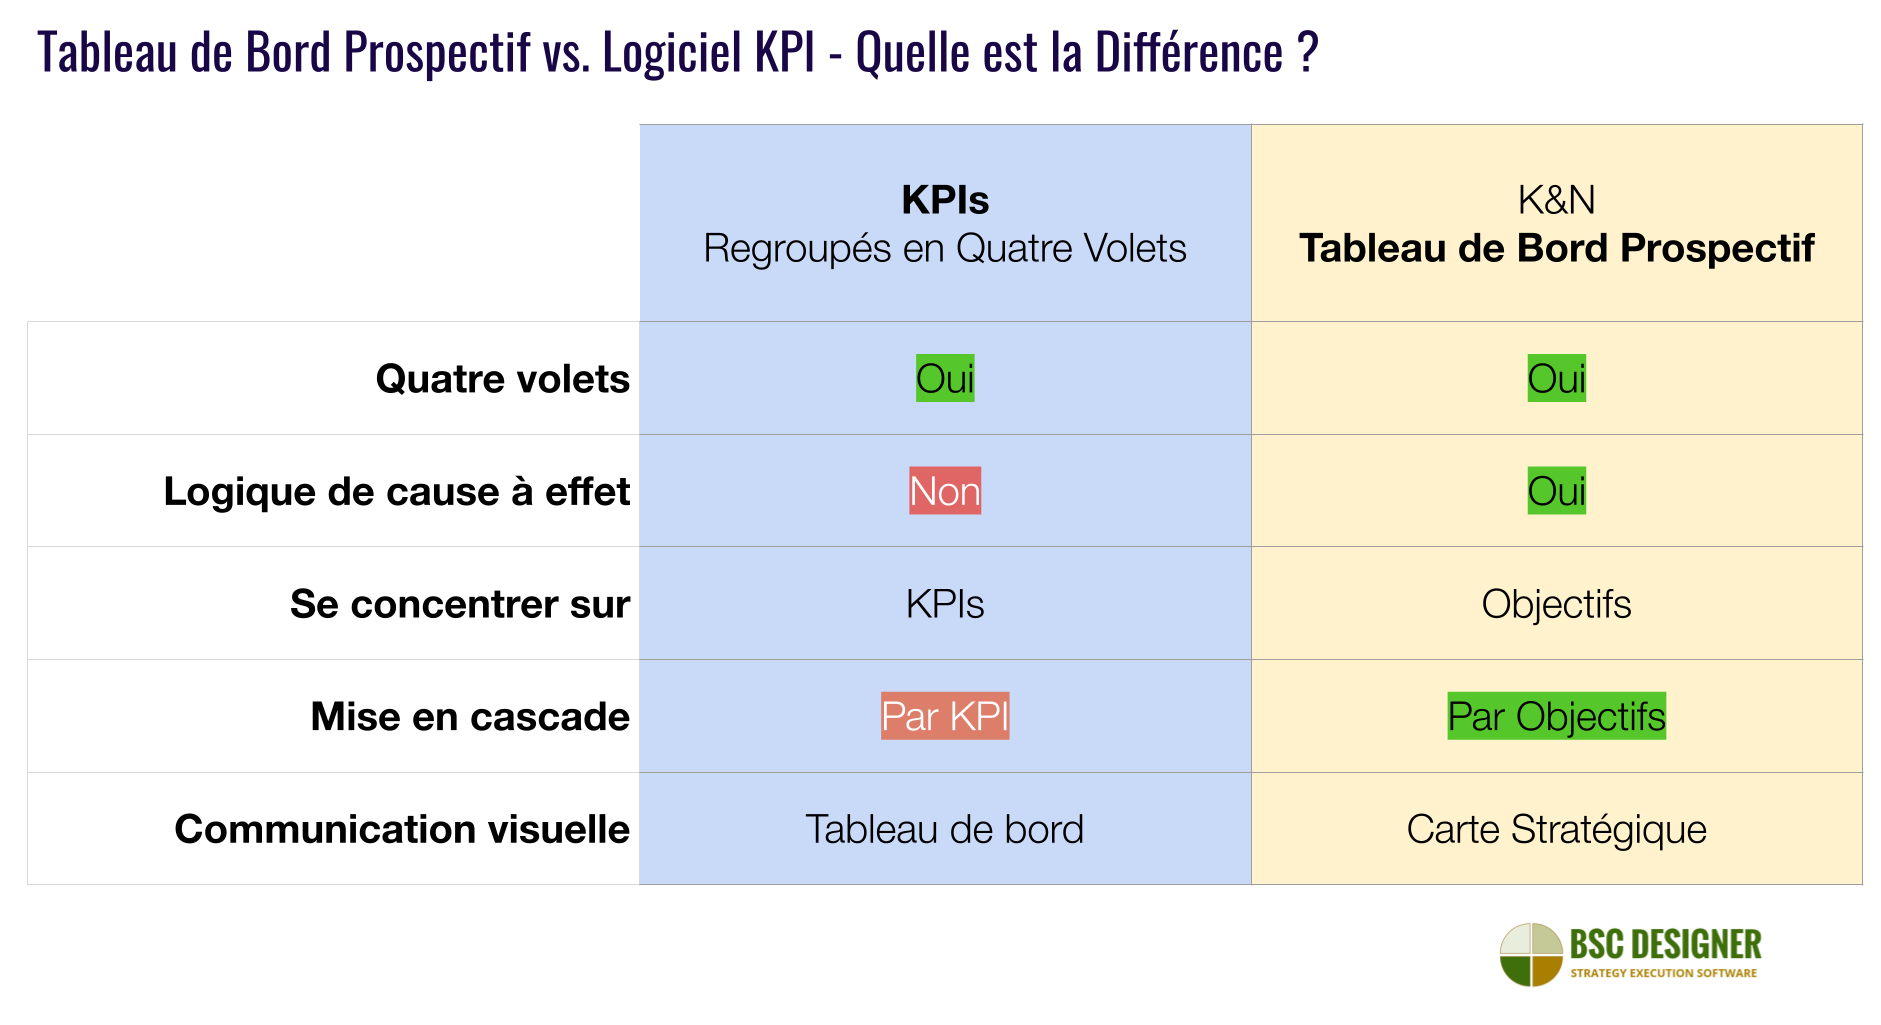 Logiciel pour tableau de bord prospectif K&N comparé au logiciel pour KPI